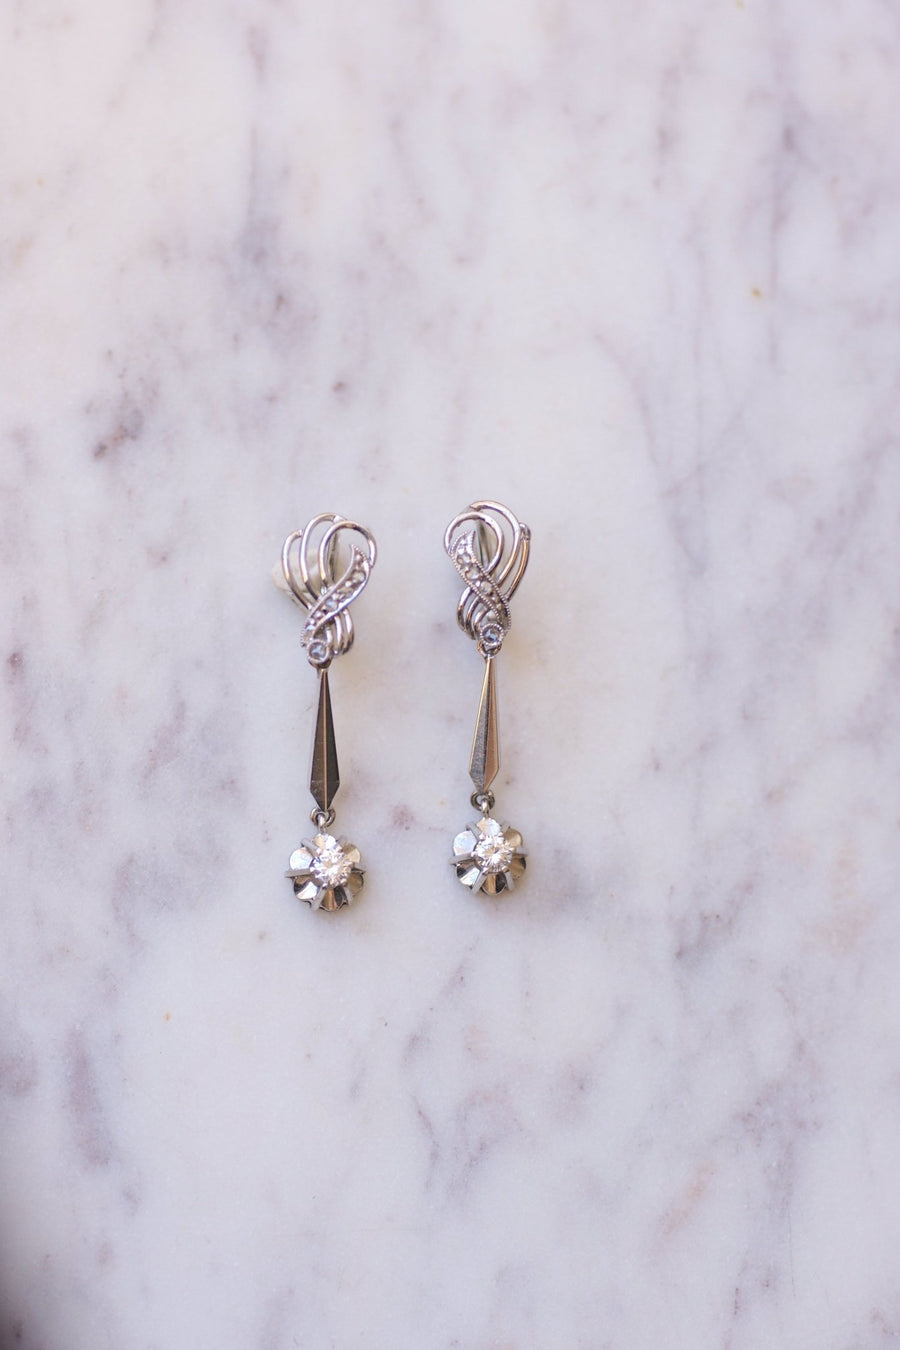 Longues boucles d'oreilles vintage pendantes, or blanc et diamants, années 60 - Galerie Pénélope